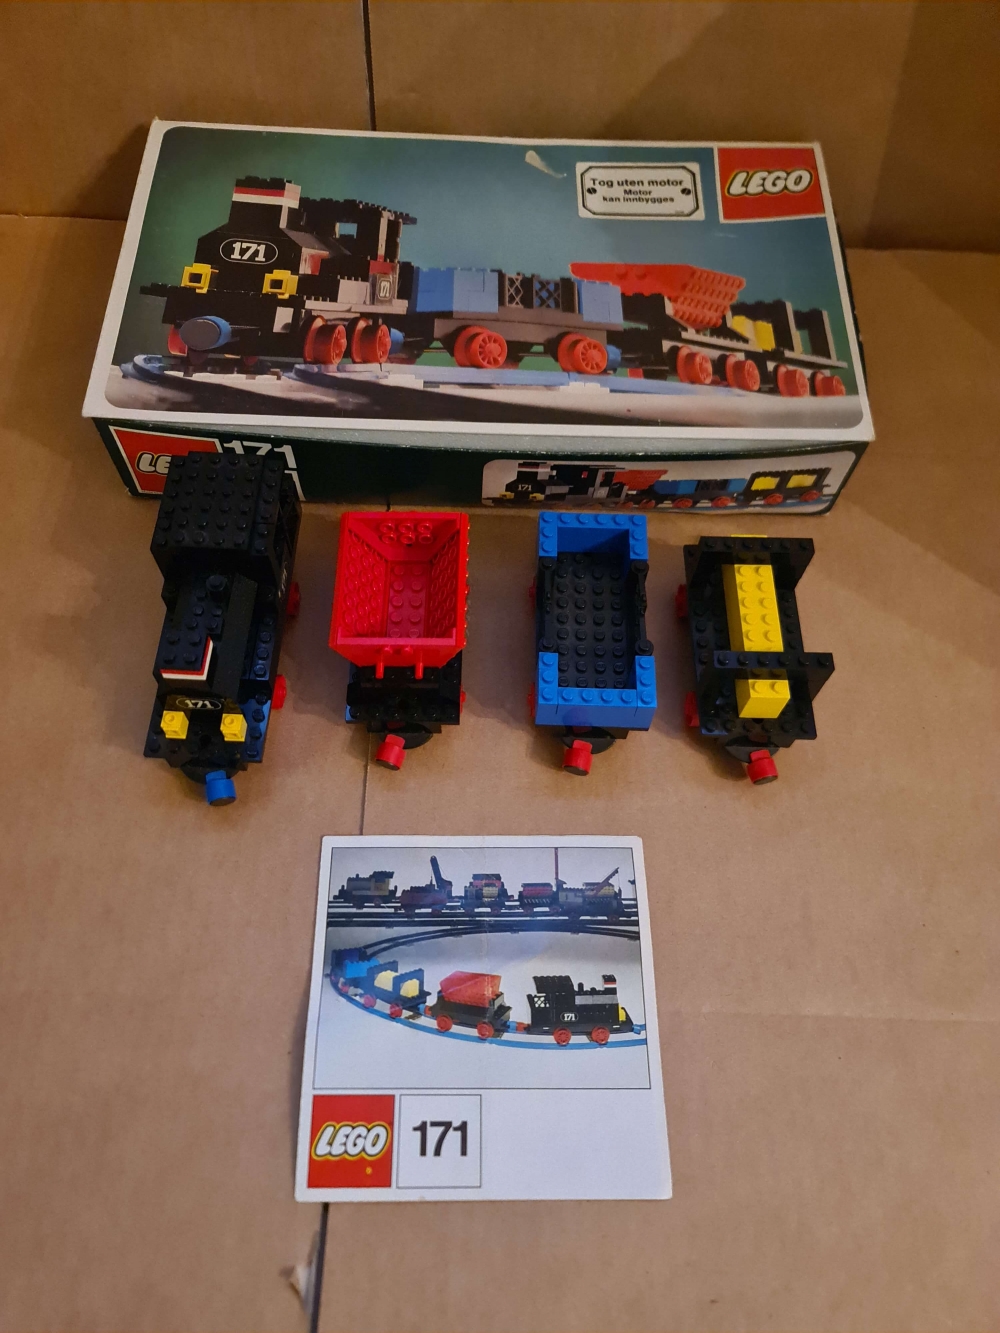 Sett 171 fra Lego Train : 4.5V serien
Meget pent sett. Kun originale brikker.
Alle klistremerker på. Med manual og eske.